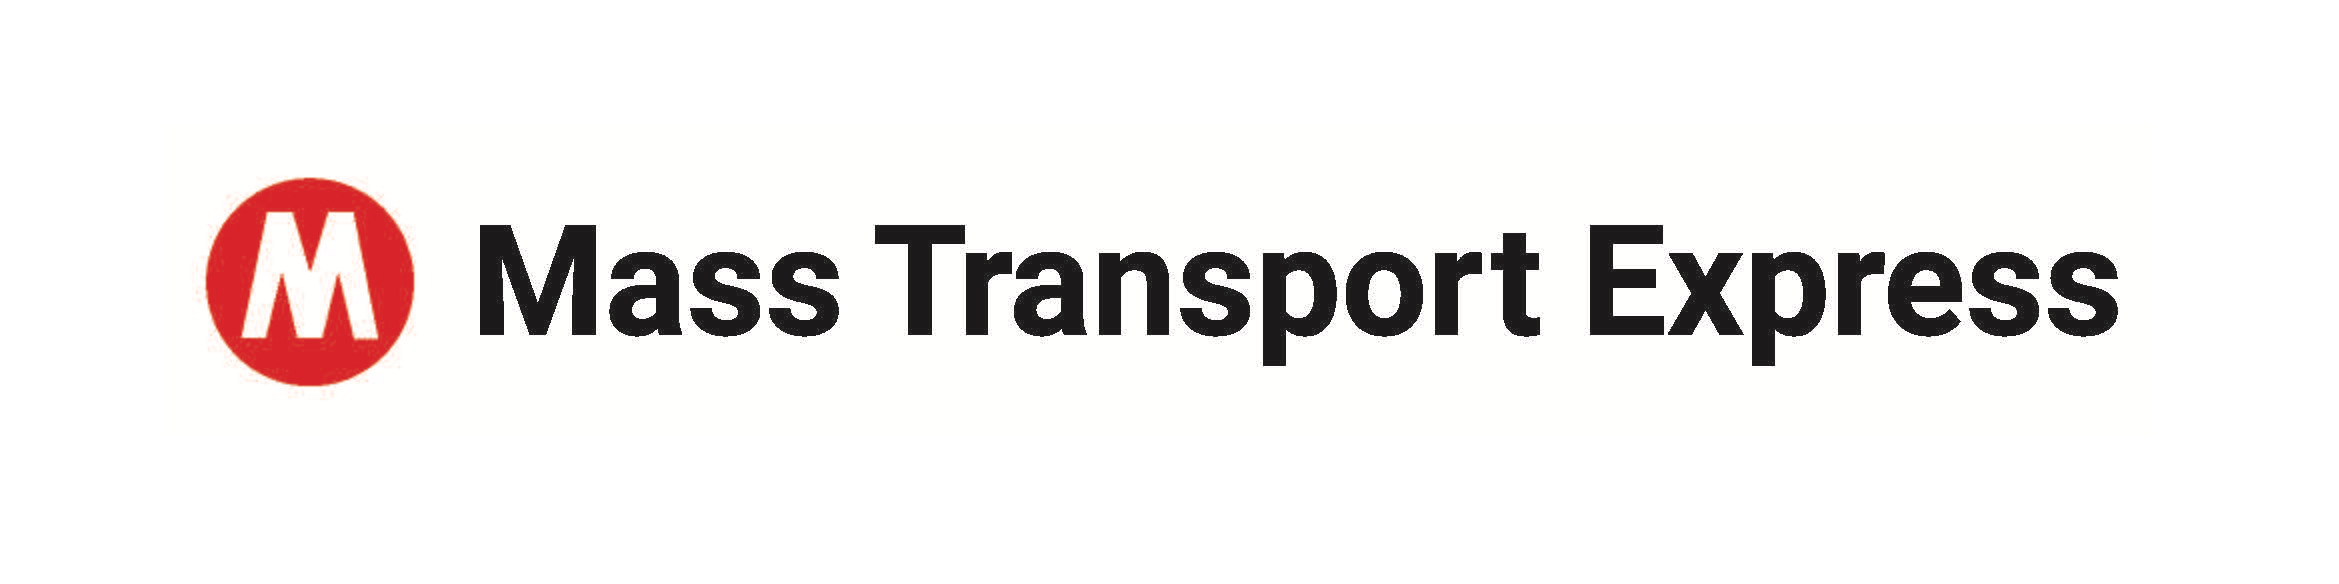 MASS TRANSPORT EXPRESS logo